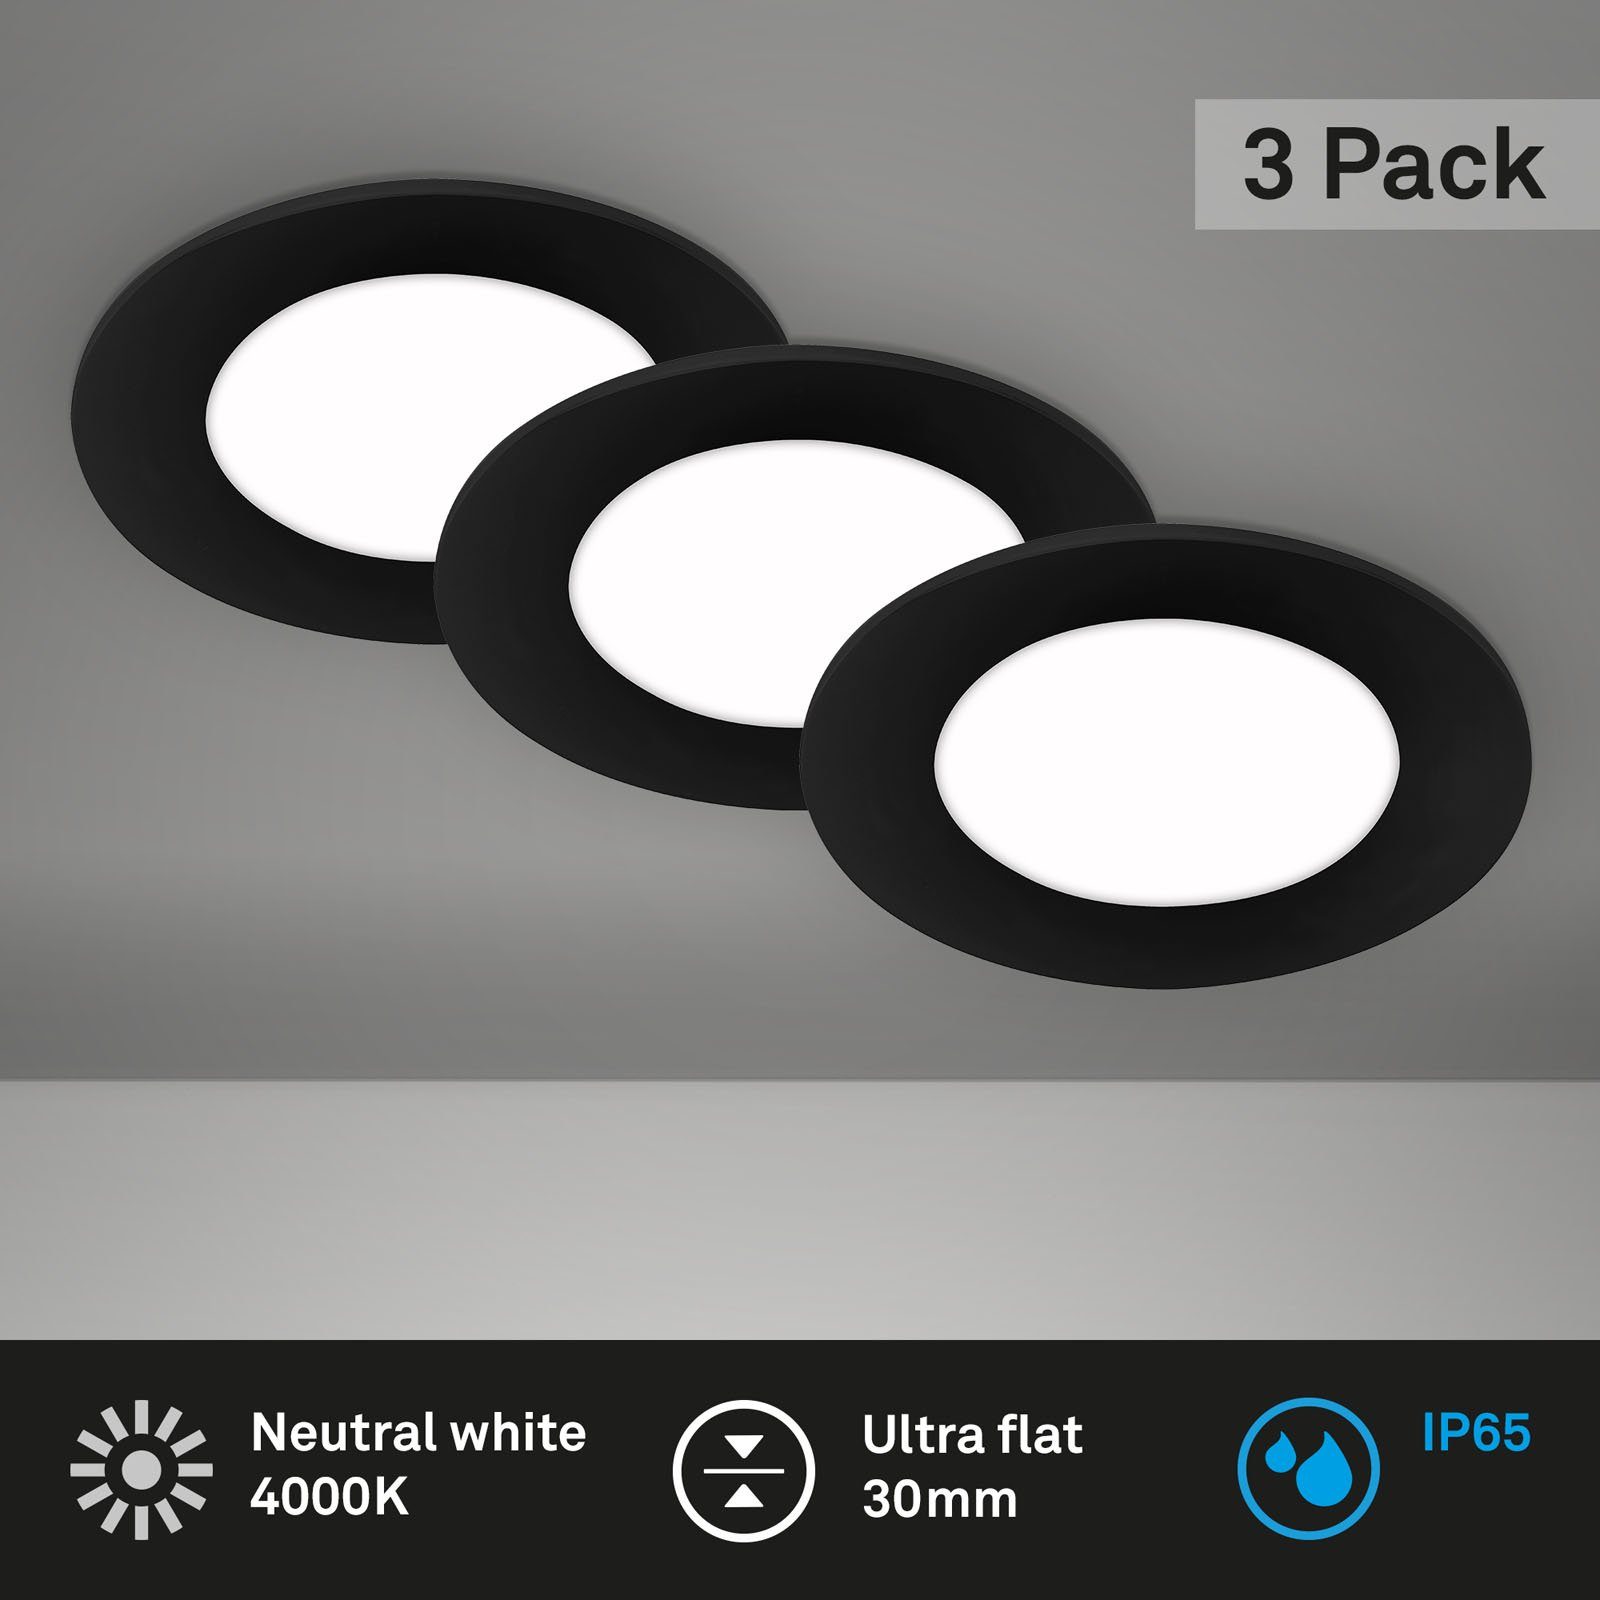 Leuchten Einbauleuchte Neutralweiß schwarz Briloner fest IP65, ultraflach, Neutralweiß, 7057-435, LED LED Set, 4000K, verbaut, 3er